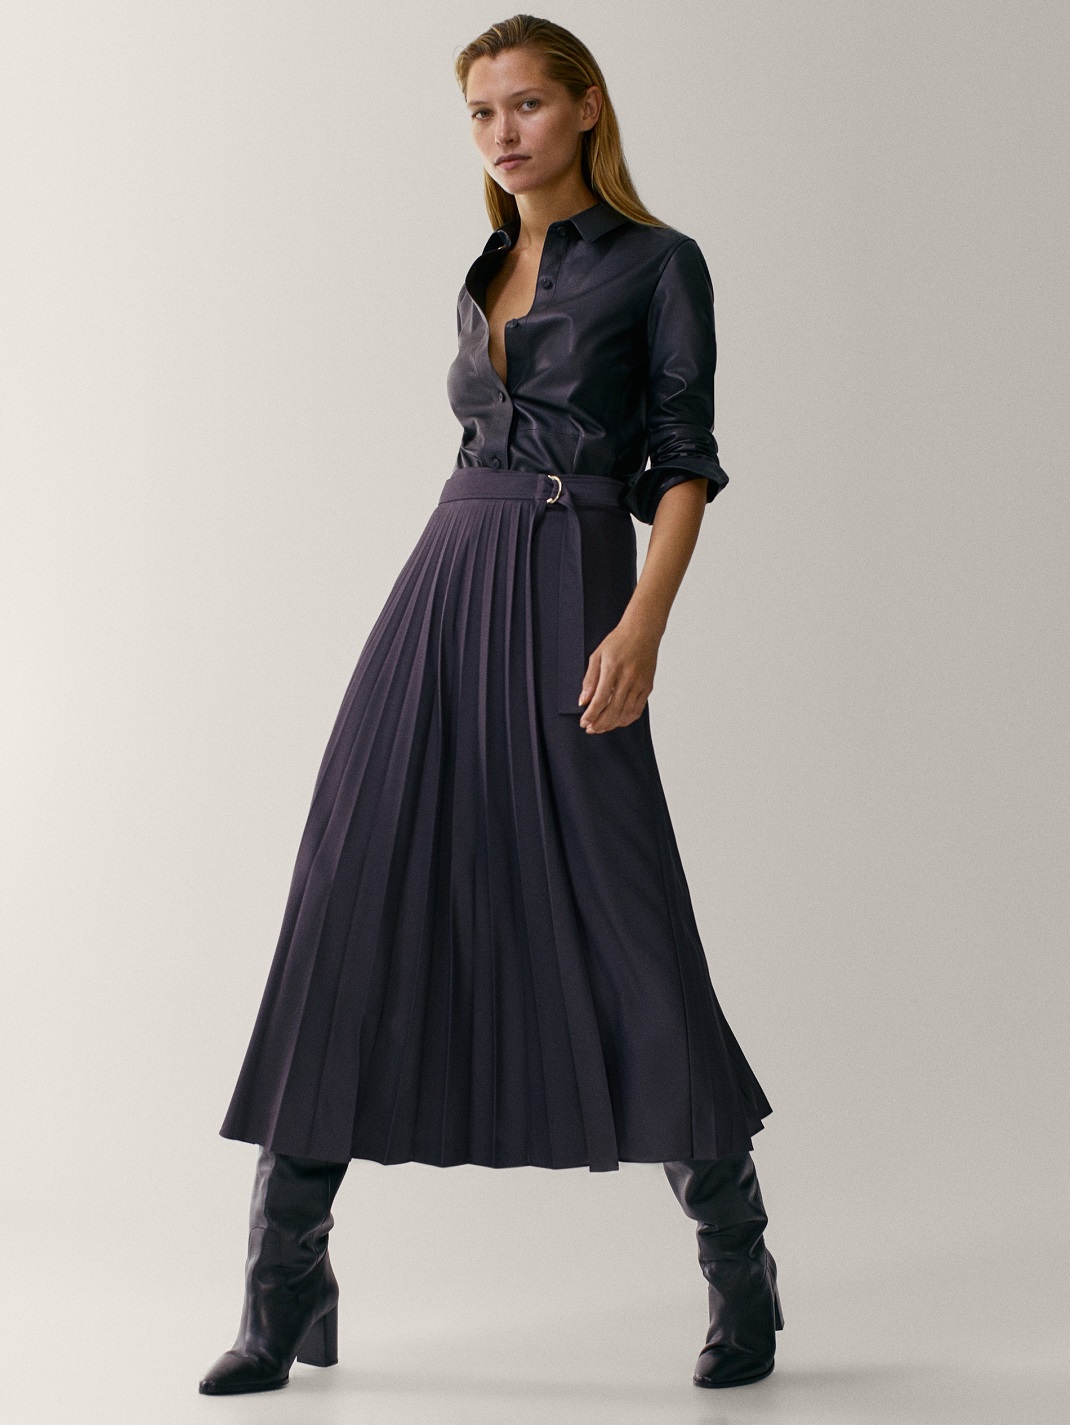 μοντέλο με πλισέ φούστα από τα Massimo Dutti